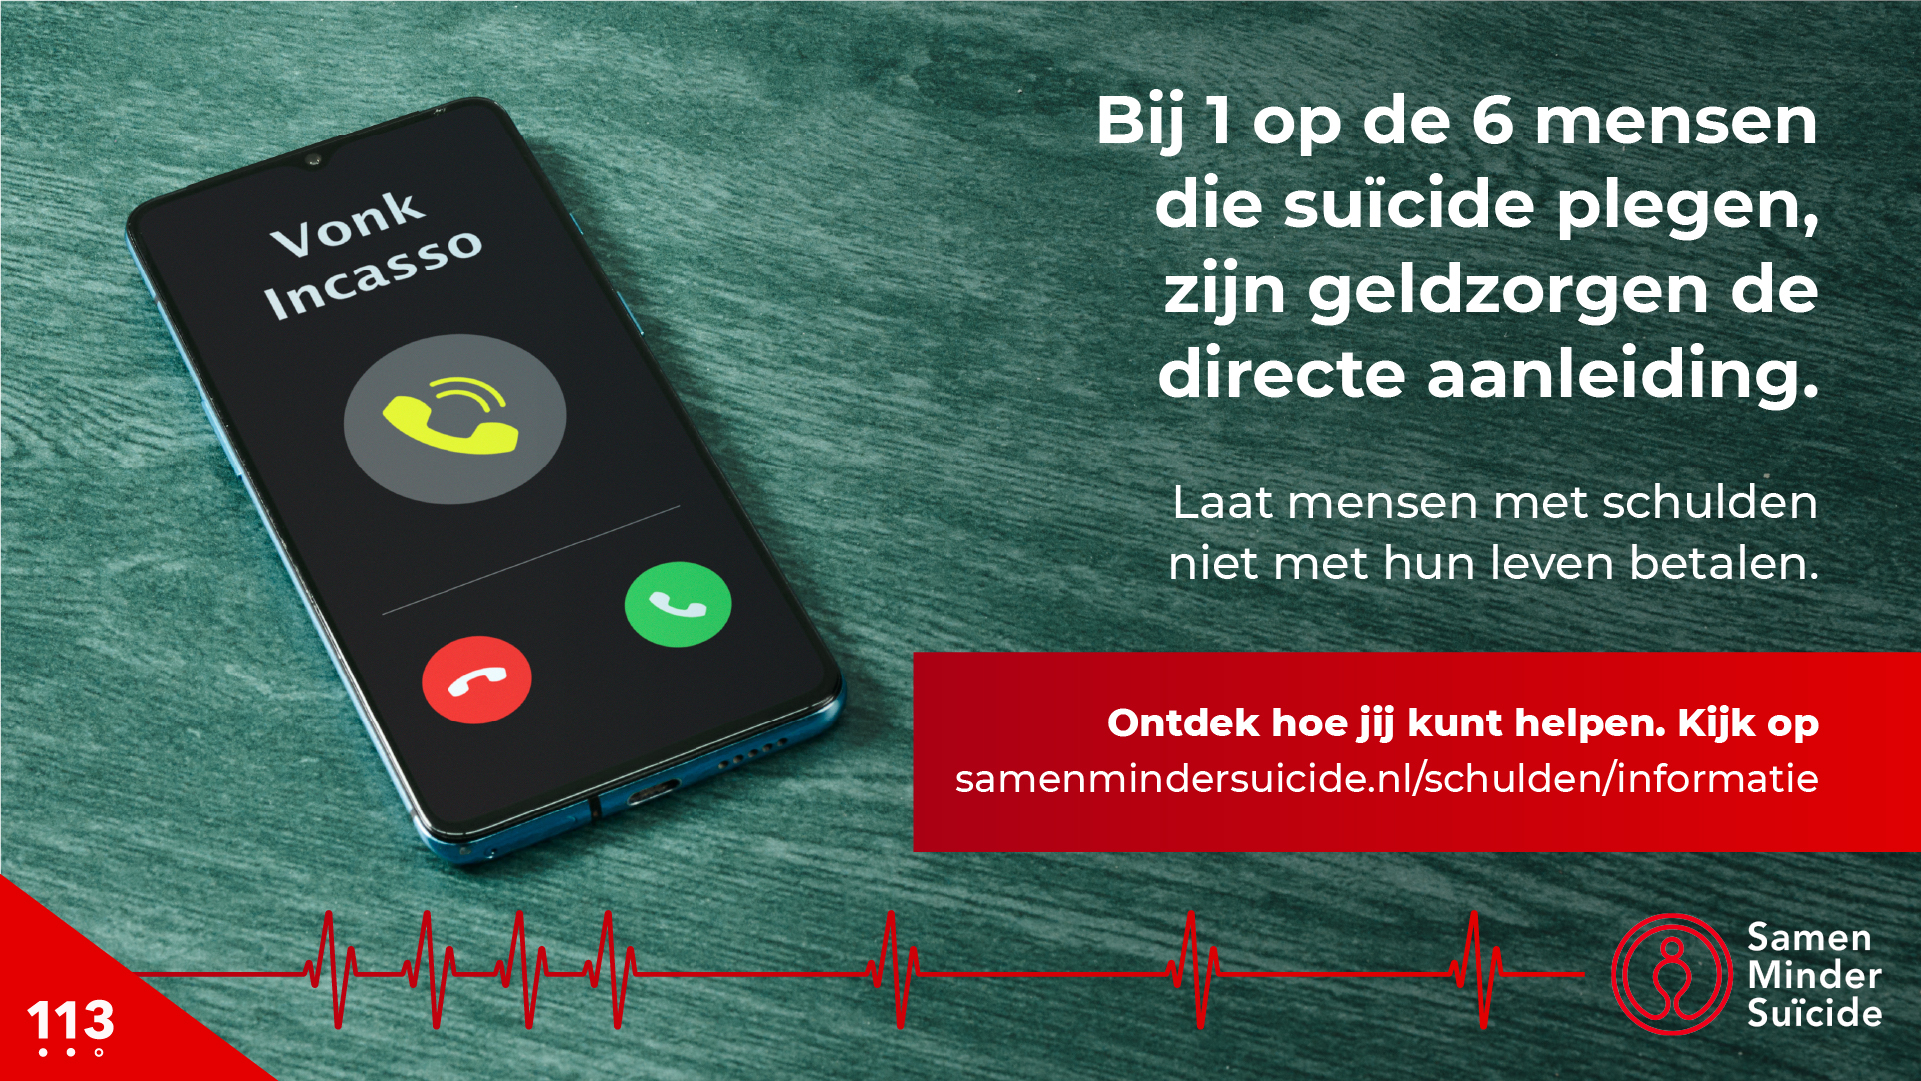 113 Zelfmoordpreventie vandaag de campagne ‘Laat mensen met schulden niet met hun leven betalen’. Want mensen met schulden blijken twee keer zo vaak suïcidaal als mensen zonder schulden.